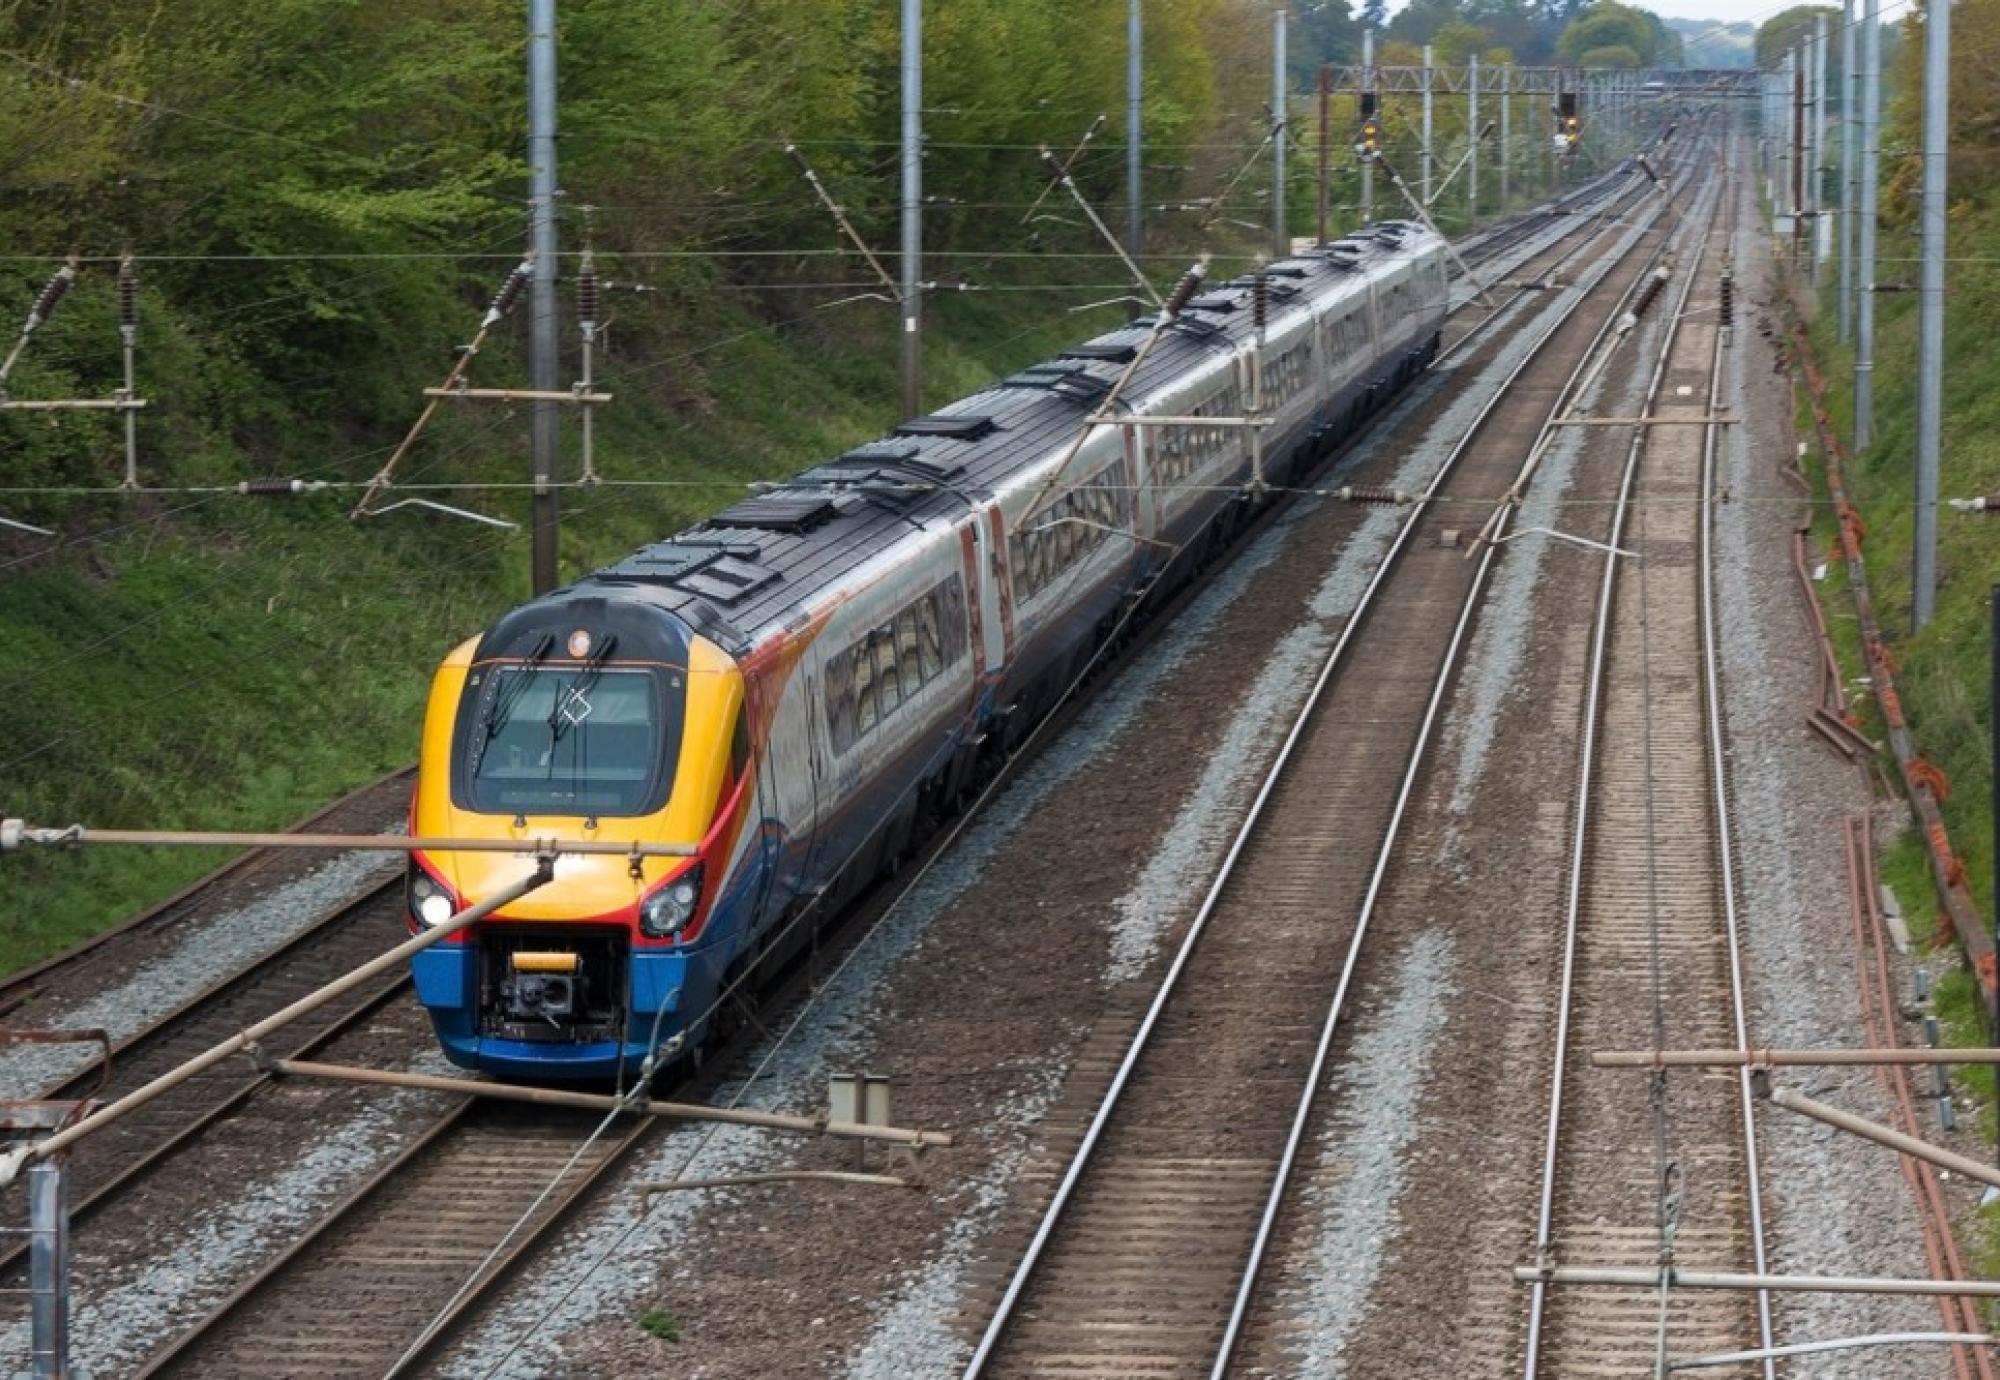 East Midlands train 